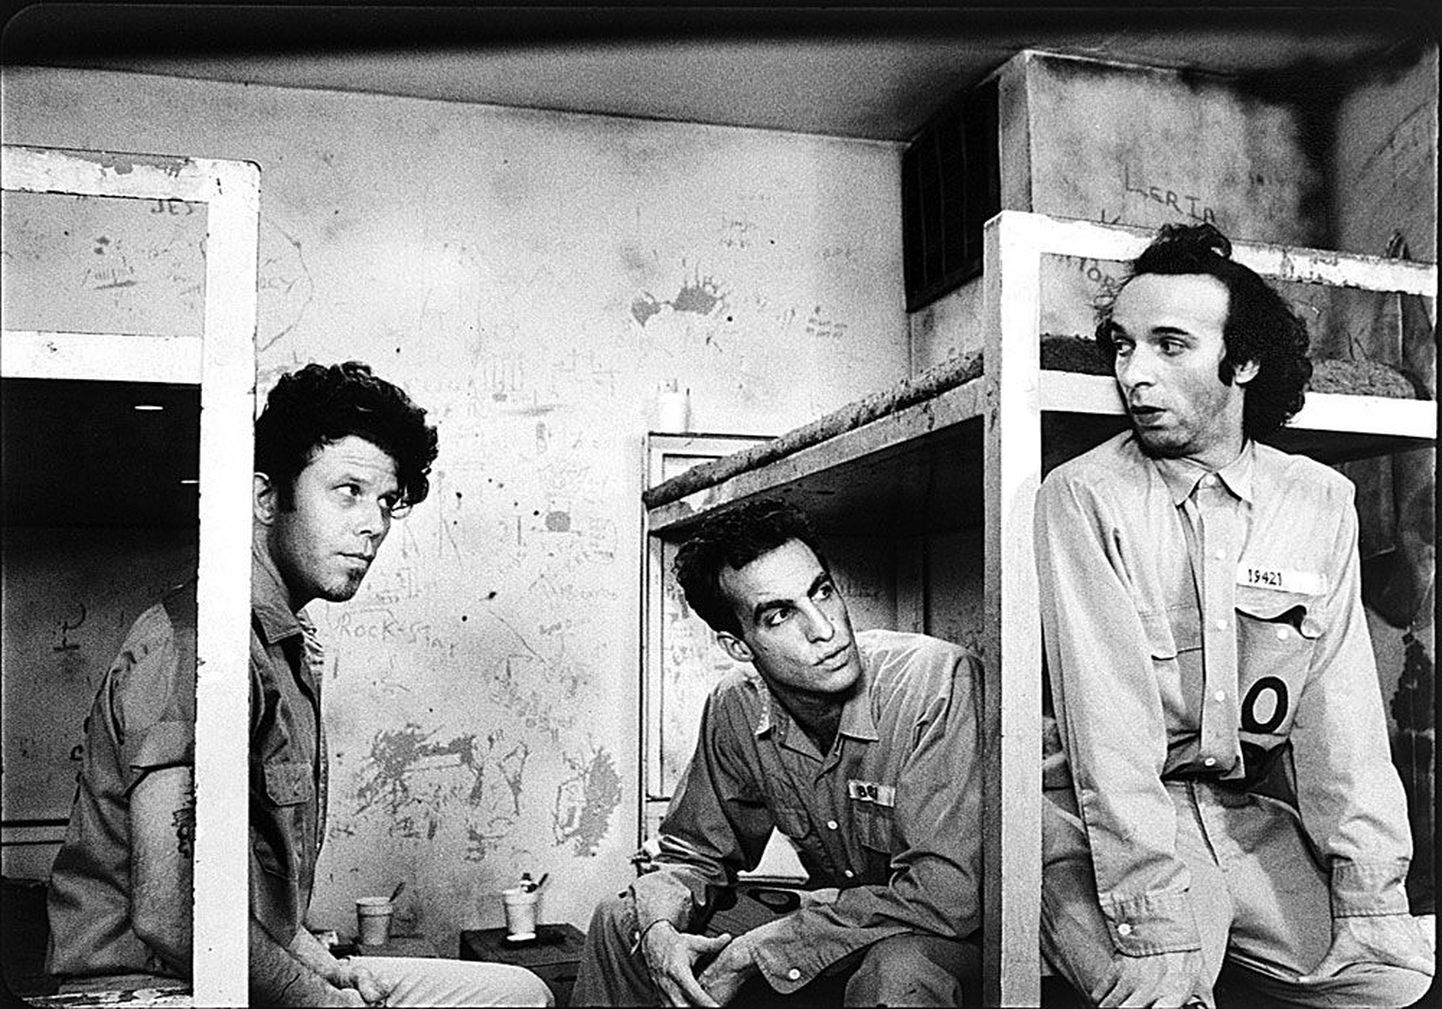 «Seaduse kütkeis» on veidrast huumorist nõretav linna- ja vanglavestern, mis jälgib kolme heidiku (vasakult) Tom Waitsi, John Lurie ja Roberto Benigni elukäiku arreteerimisest kuni vanglast põgenemiseni.